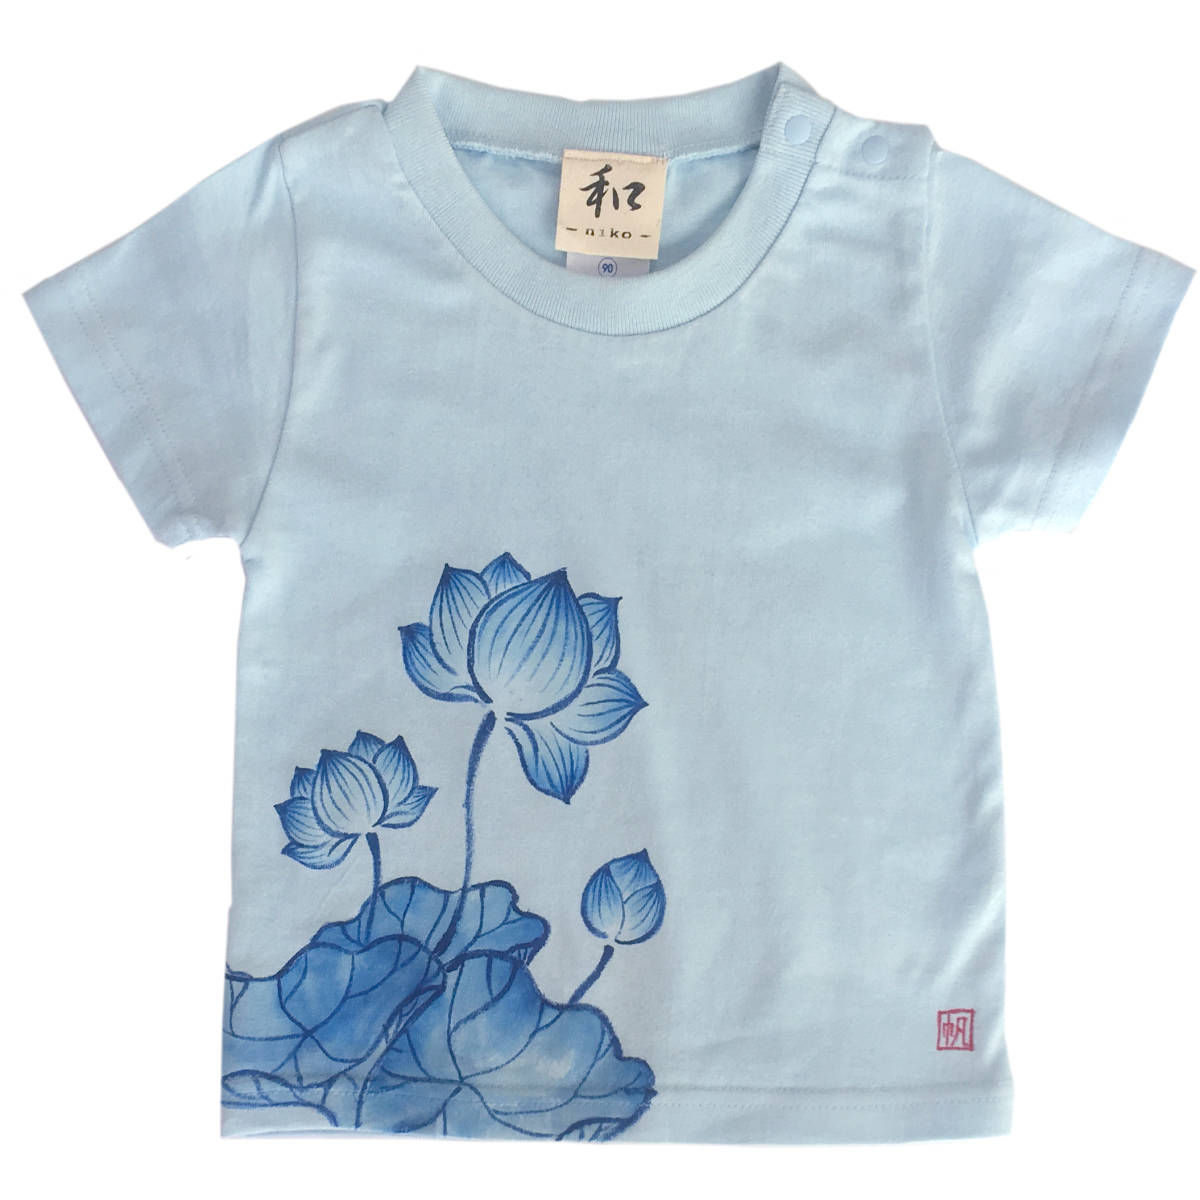 키즈 티셔츠 사이즈 120 푸른 연꽃 무늬 티셔츠 손으로 그리는 연꽃 무늬 티셔츠 반팔 일본식 무늬 일본식 복고풍 수제, 상의, 반소매 티셔츠, 120(115~124cm)